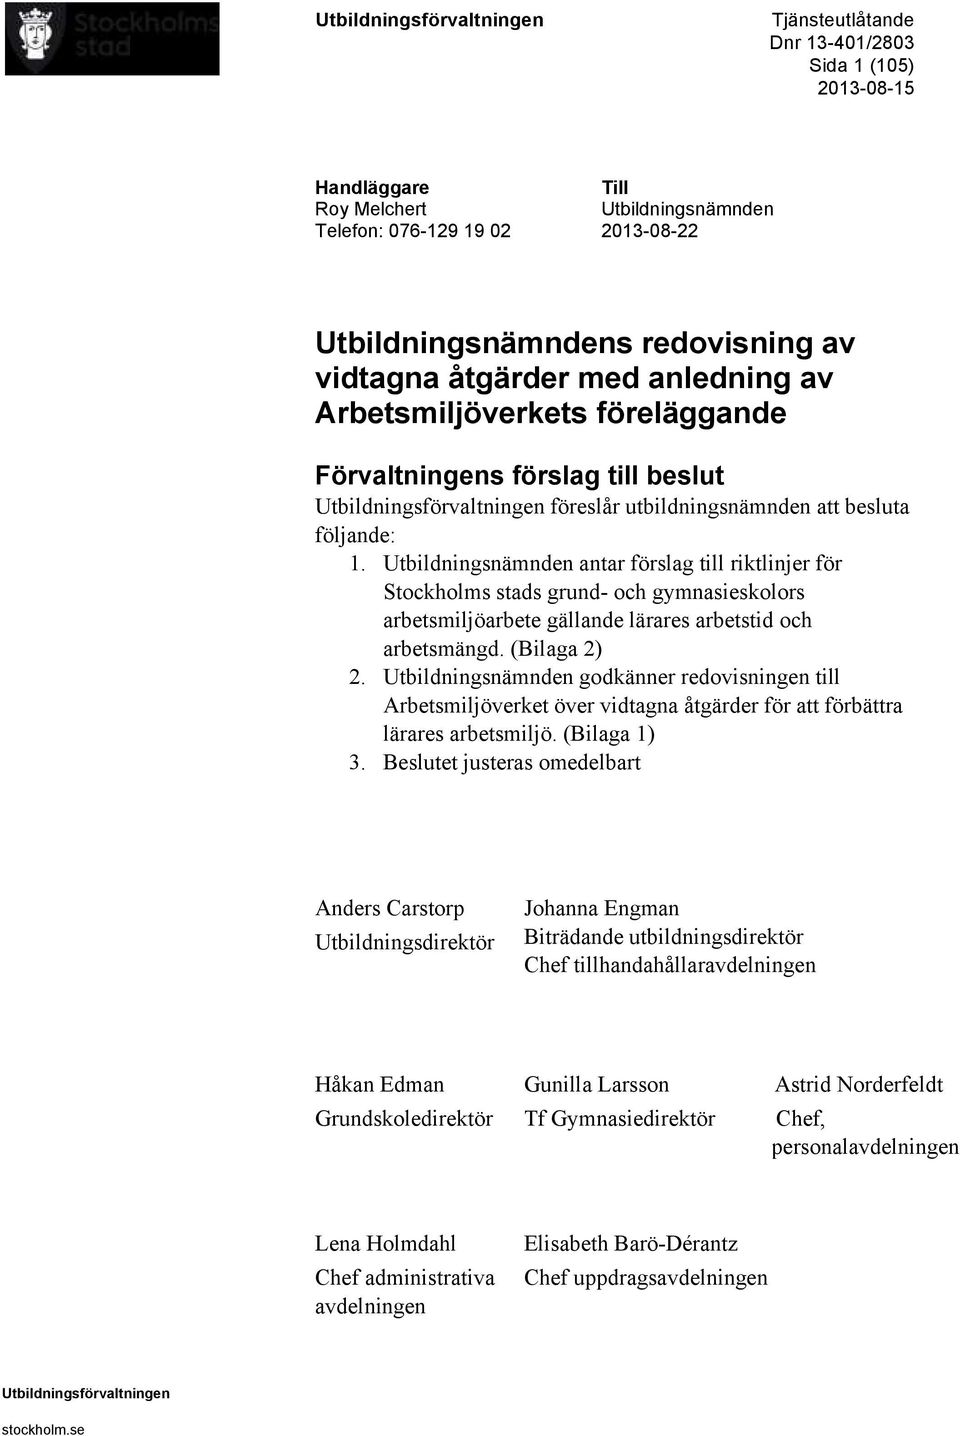 Utbildningsnämnden antar förslag till riktlinjer för Stockholms stads grund- och gymnasieskolors arbetsmiljöarbete gällande lärares arbetstid och arbetsmängd. (Bilaga 2) 2.